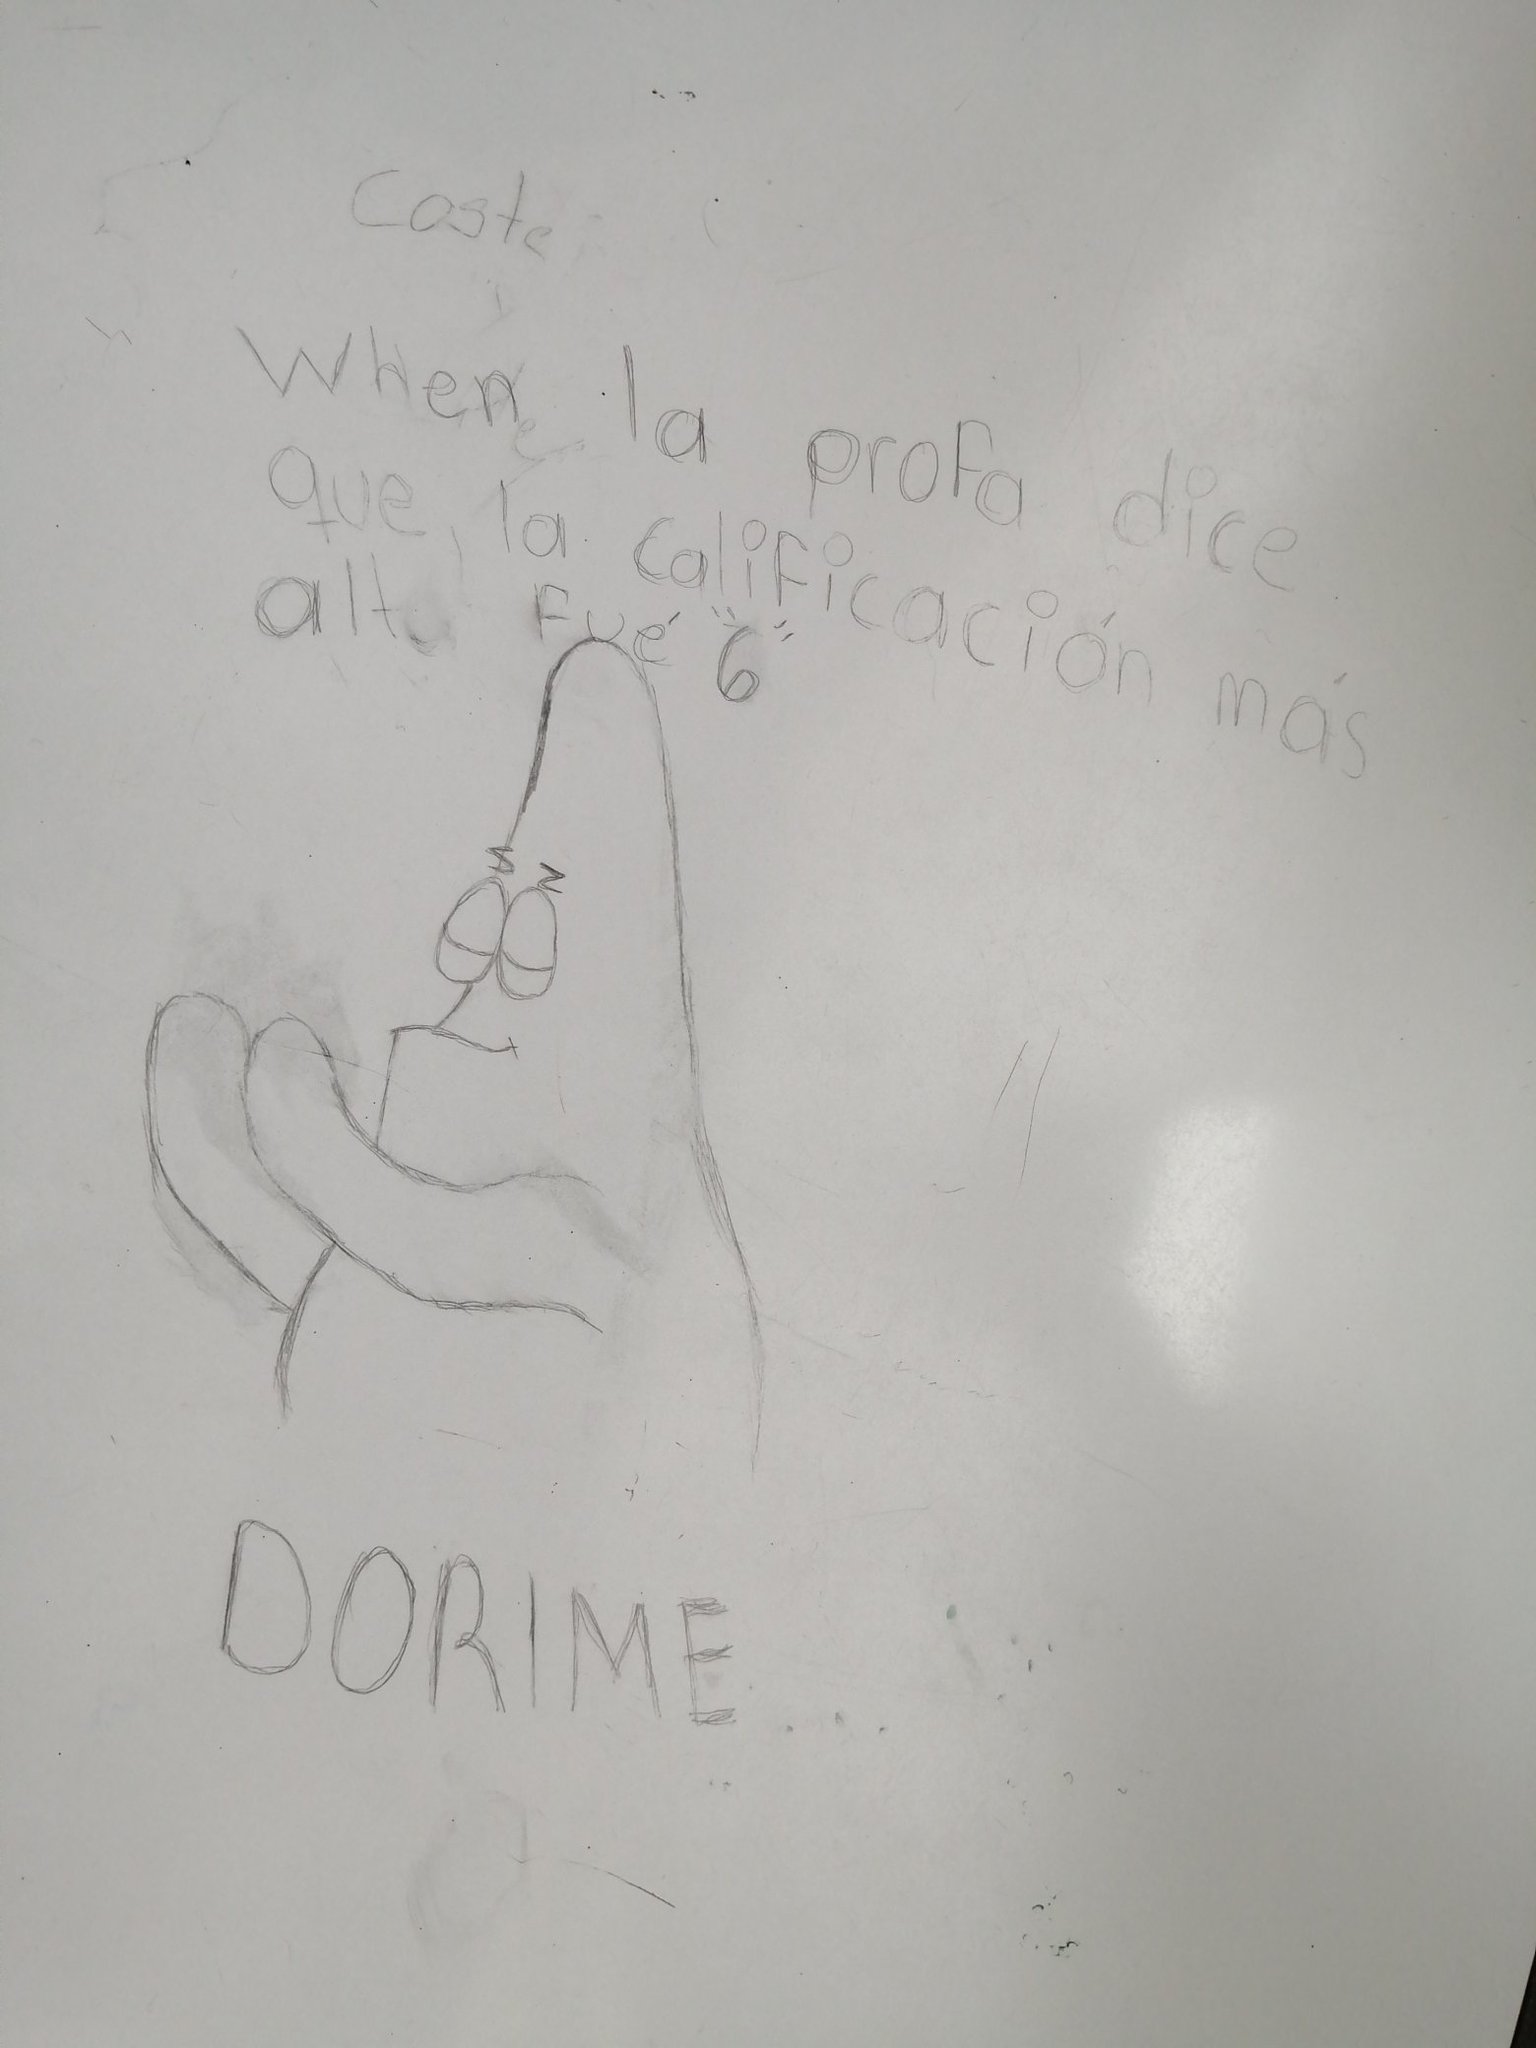 Dorimeee:v - meme